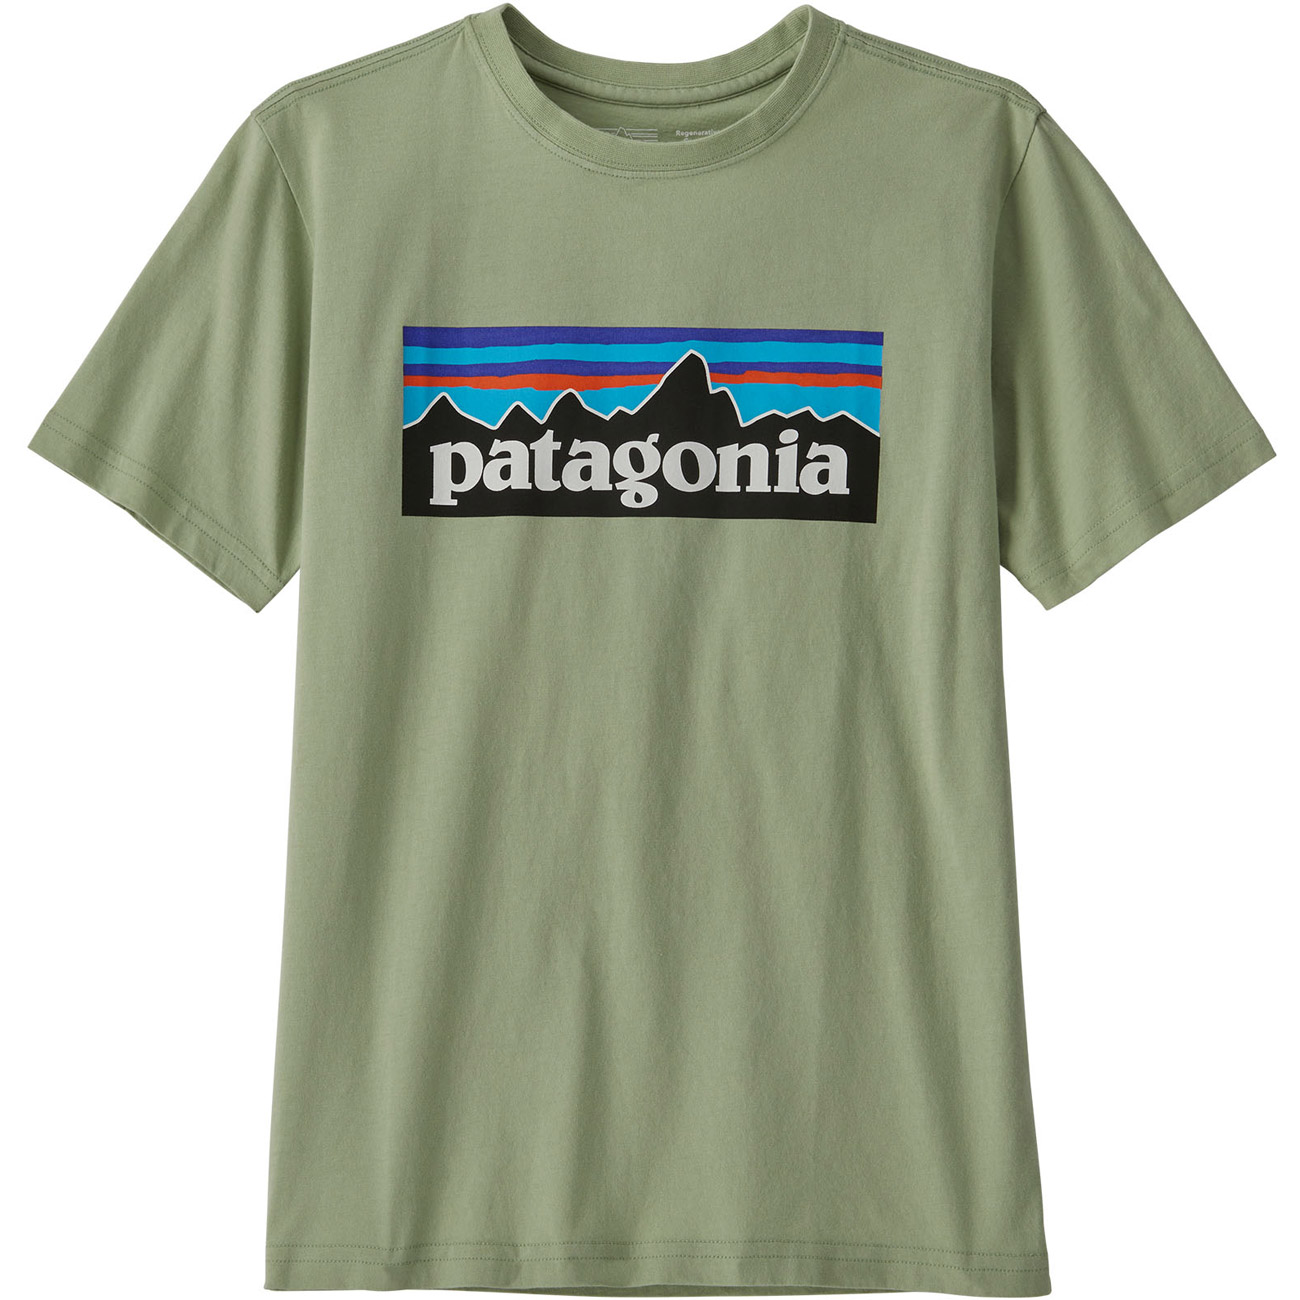 Patagonia Kinder T-Shirt Regenerative Organic Certified Cott von Patagonia